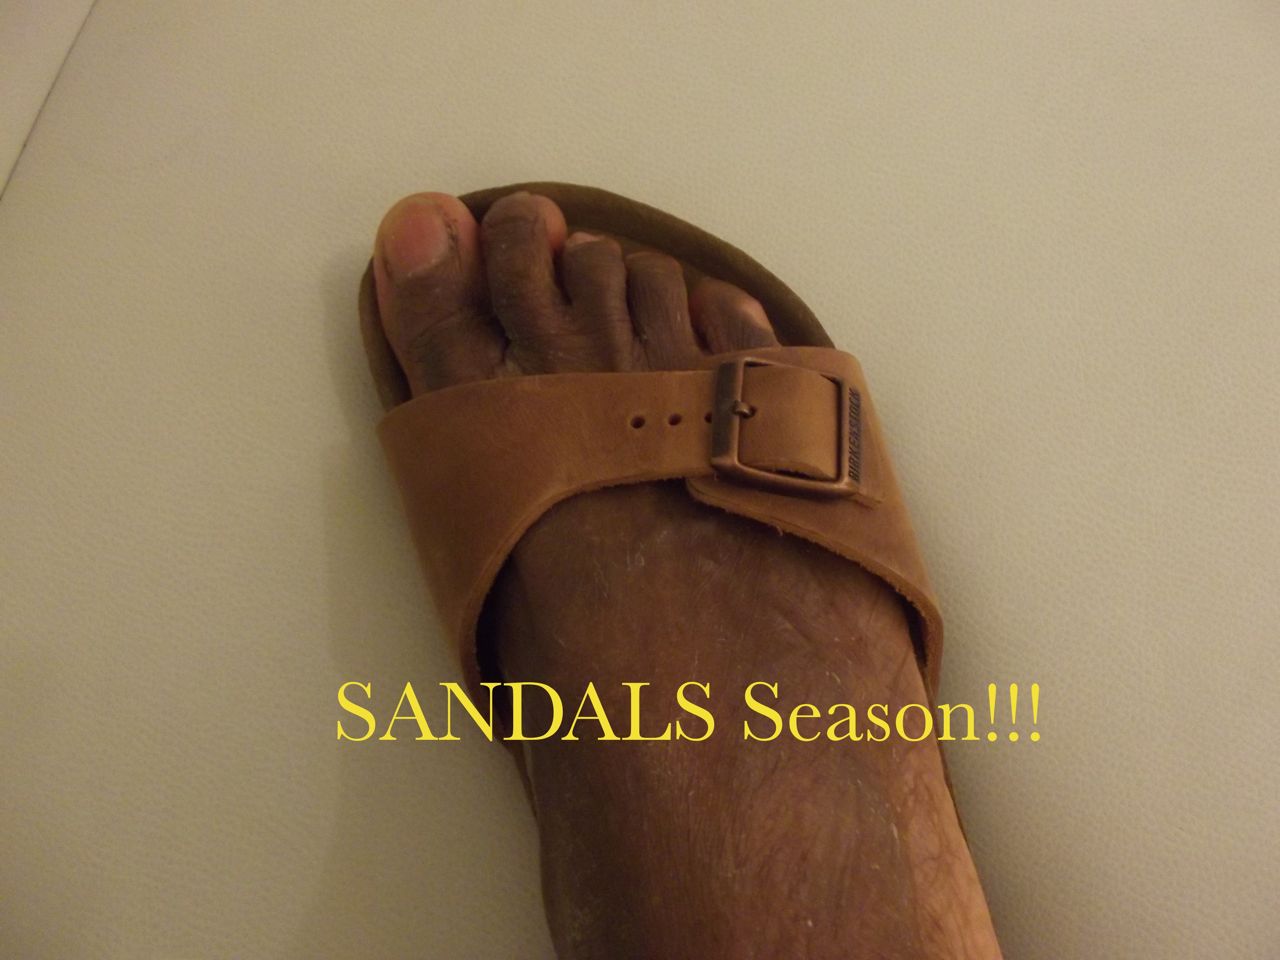 <!--:en-->Summer Time Sandals Season begins!!<!--:-->